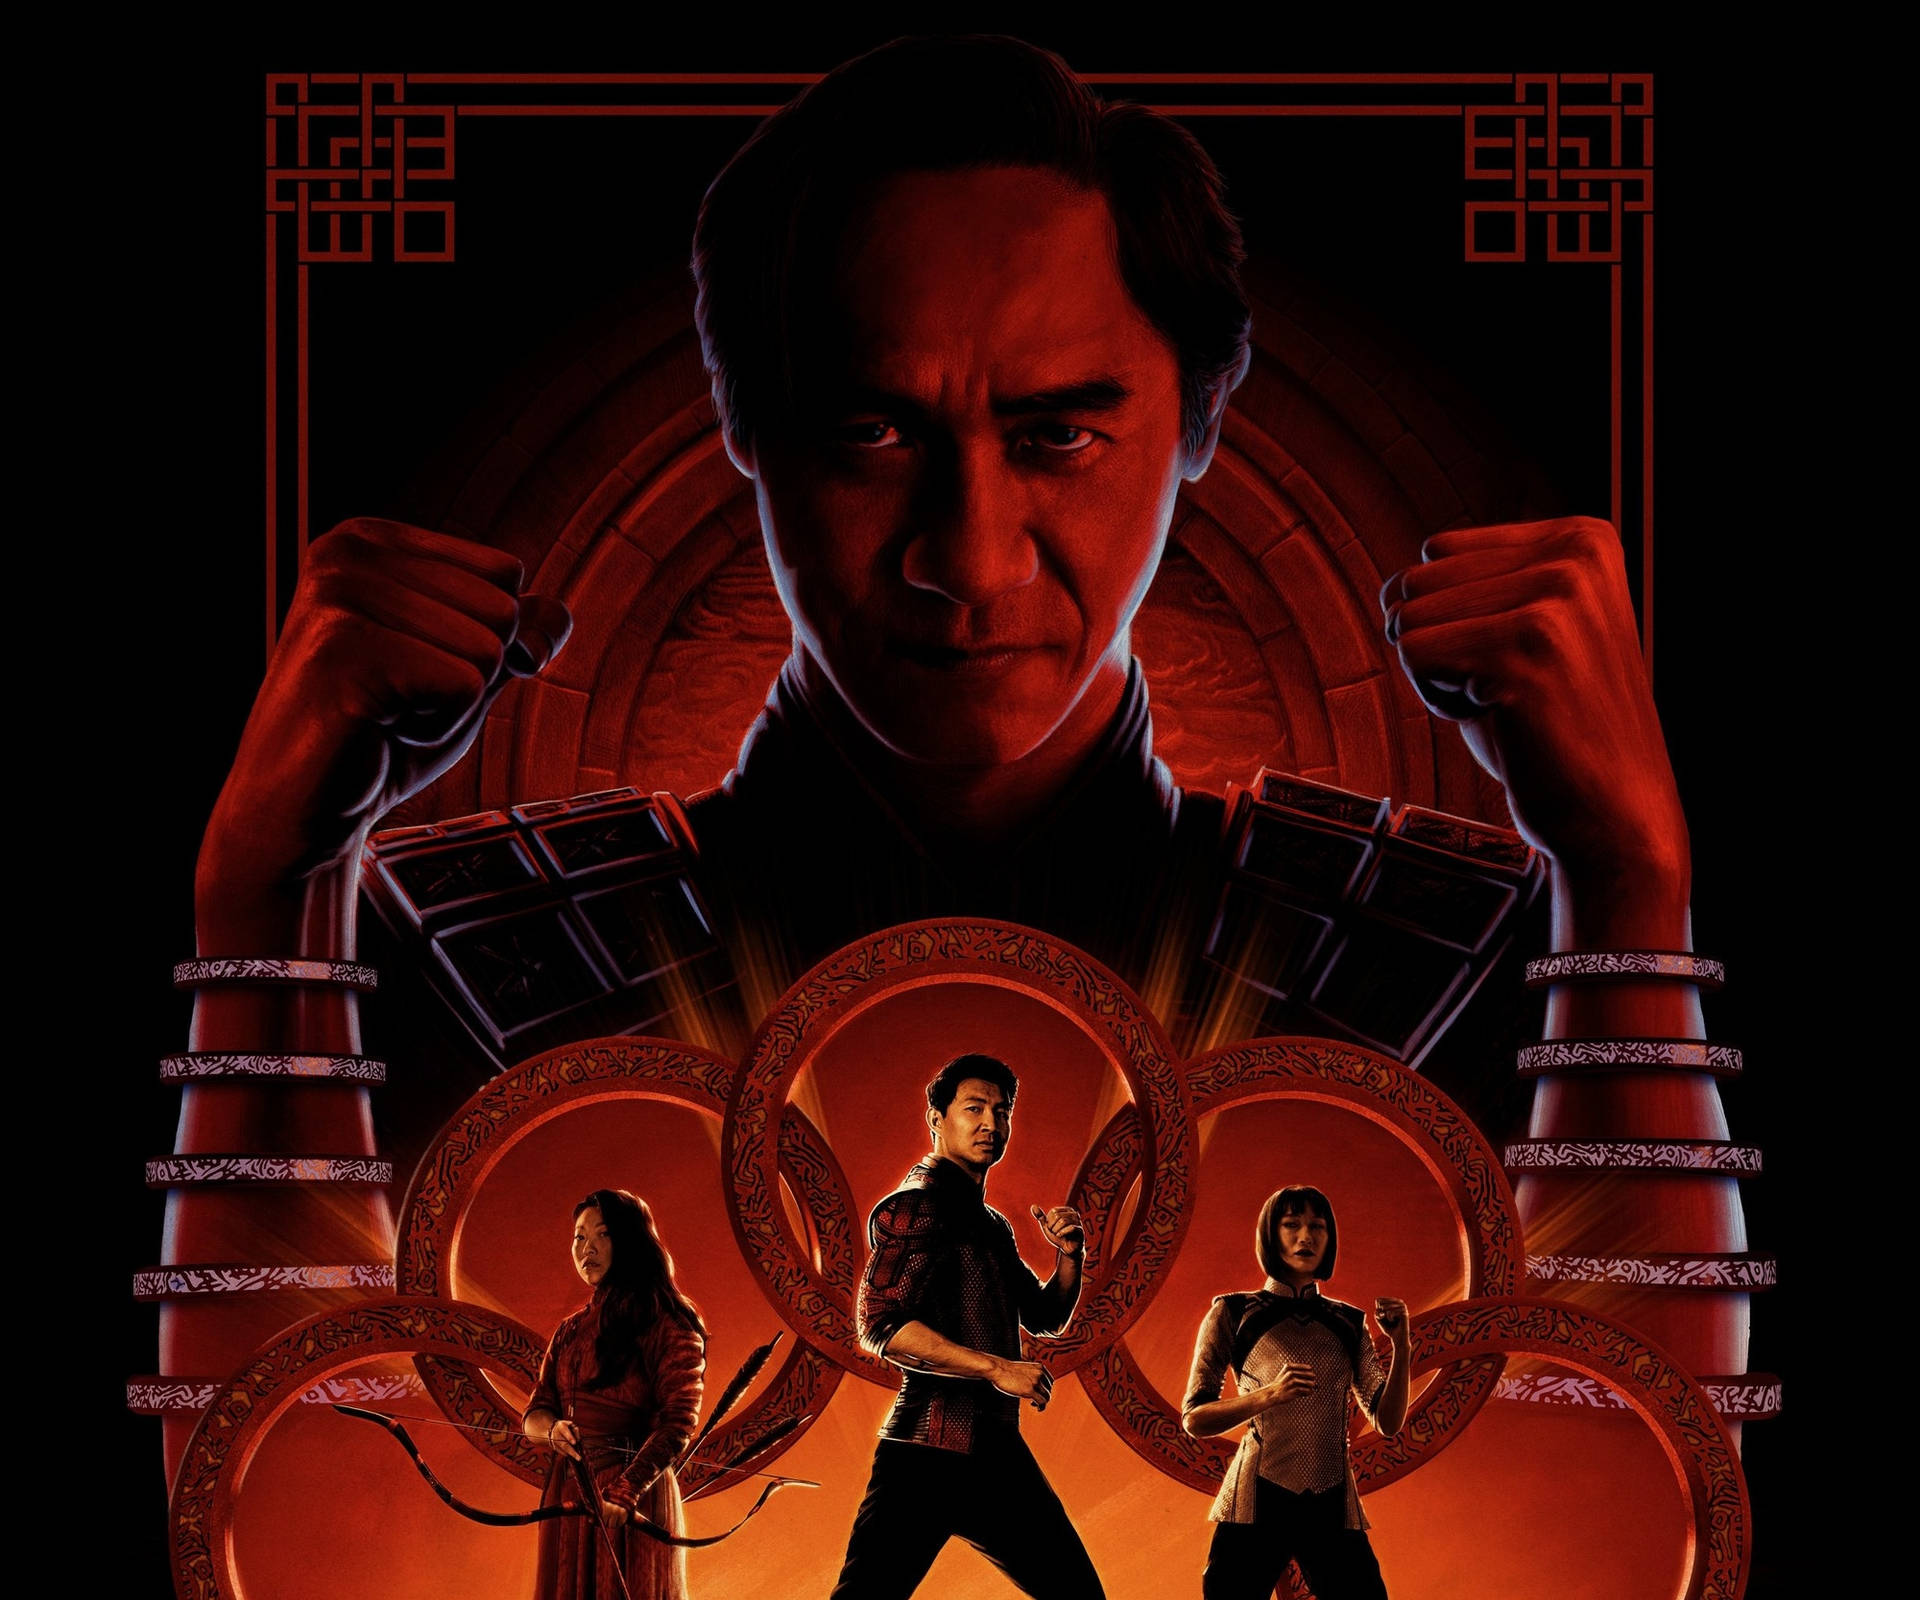 Ilpotente Shang-chi In Azione - Poster Ufficiale Di Shang-chi E La Leggenda Dei Dieci Anelli Sfondo